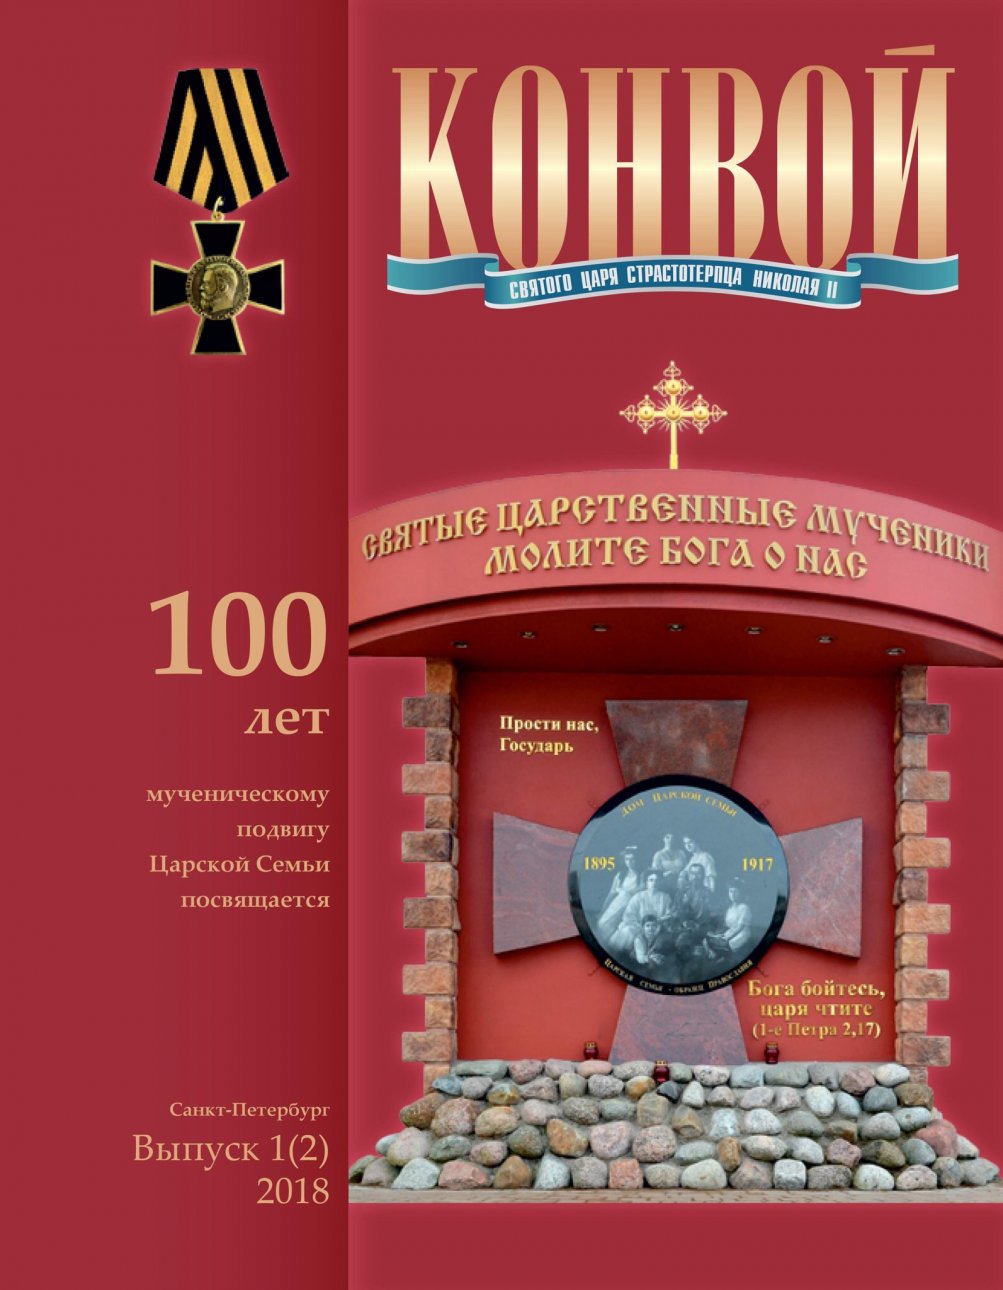 Альманах памяти императора Николая II издал ДПЦ Сестрорецка